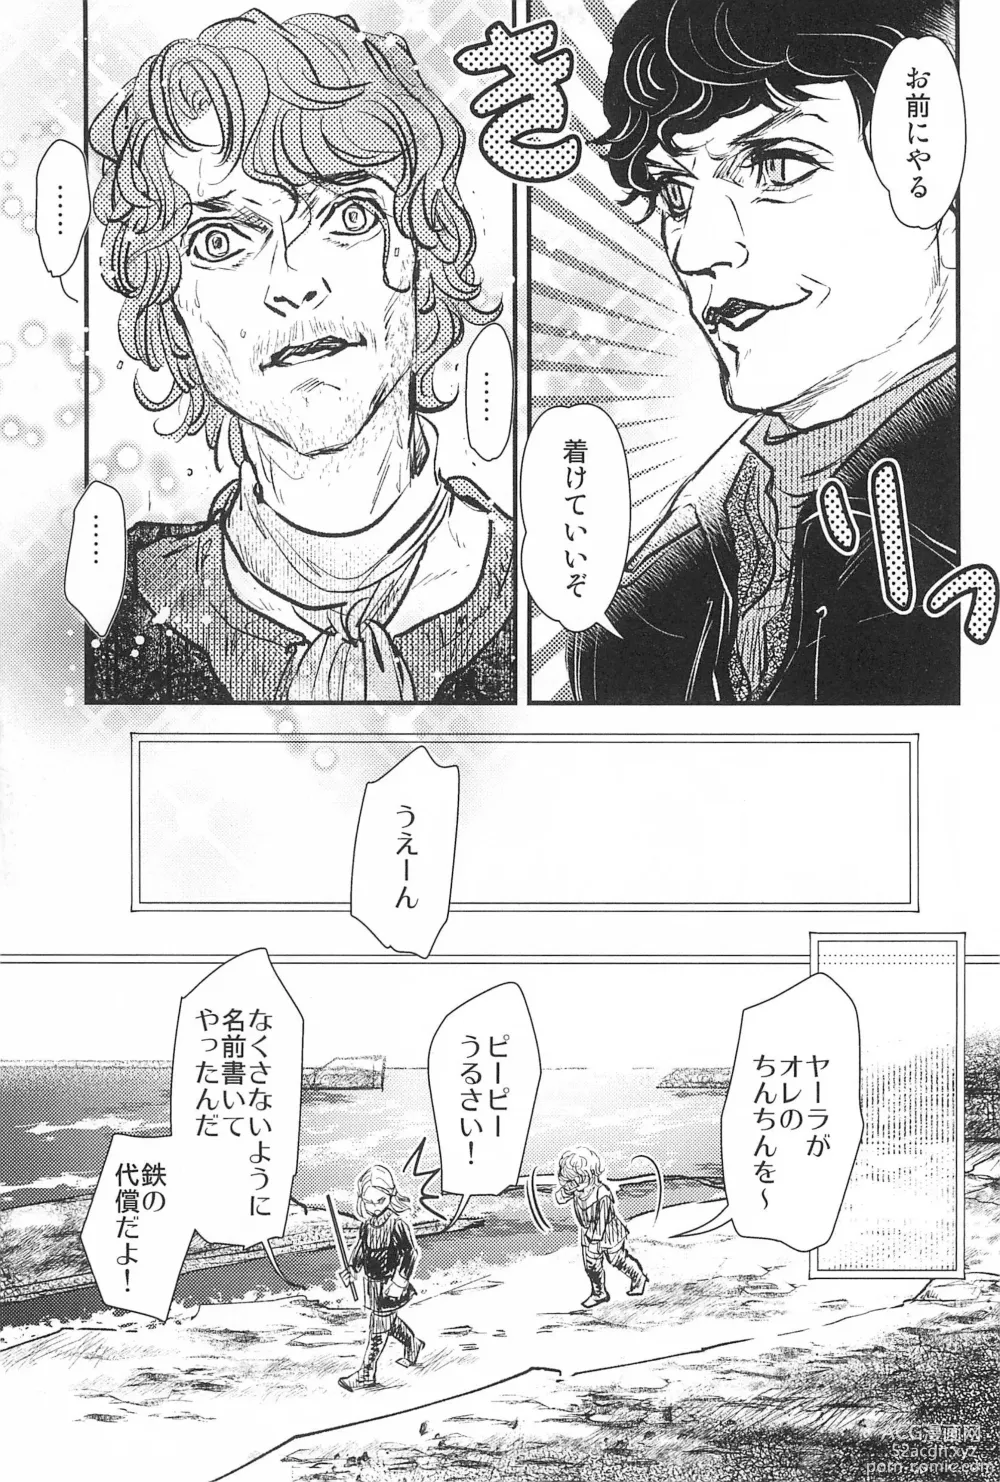 Page 19 of doujinshi Game of Balls Sao to Tama no Uta